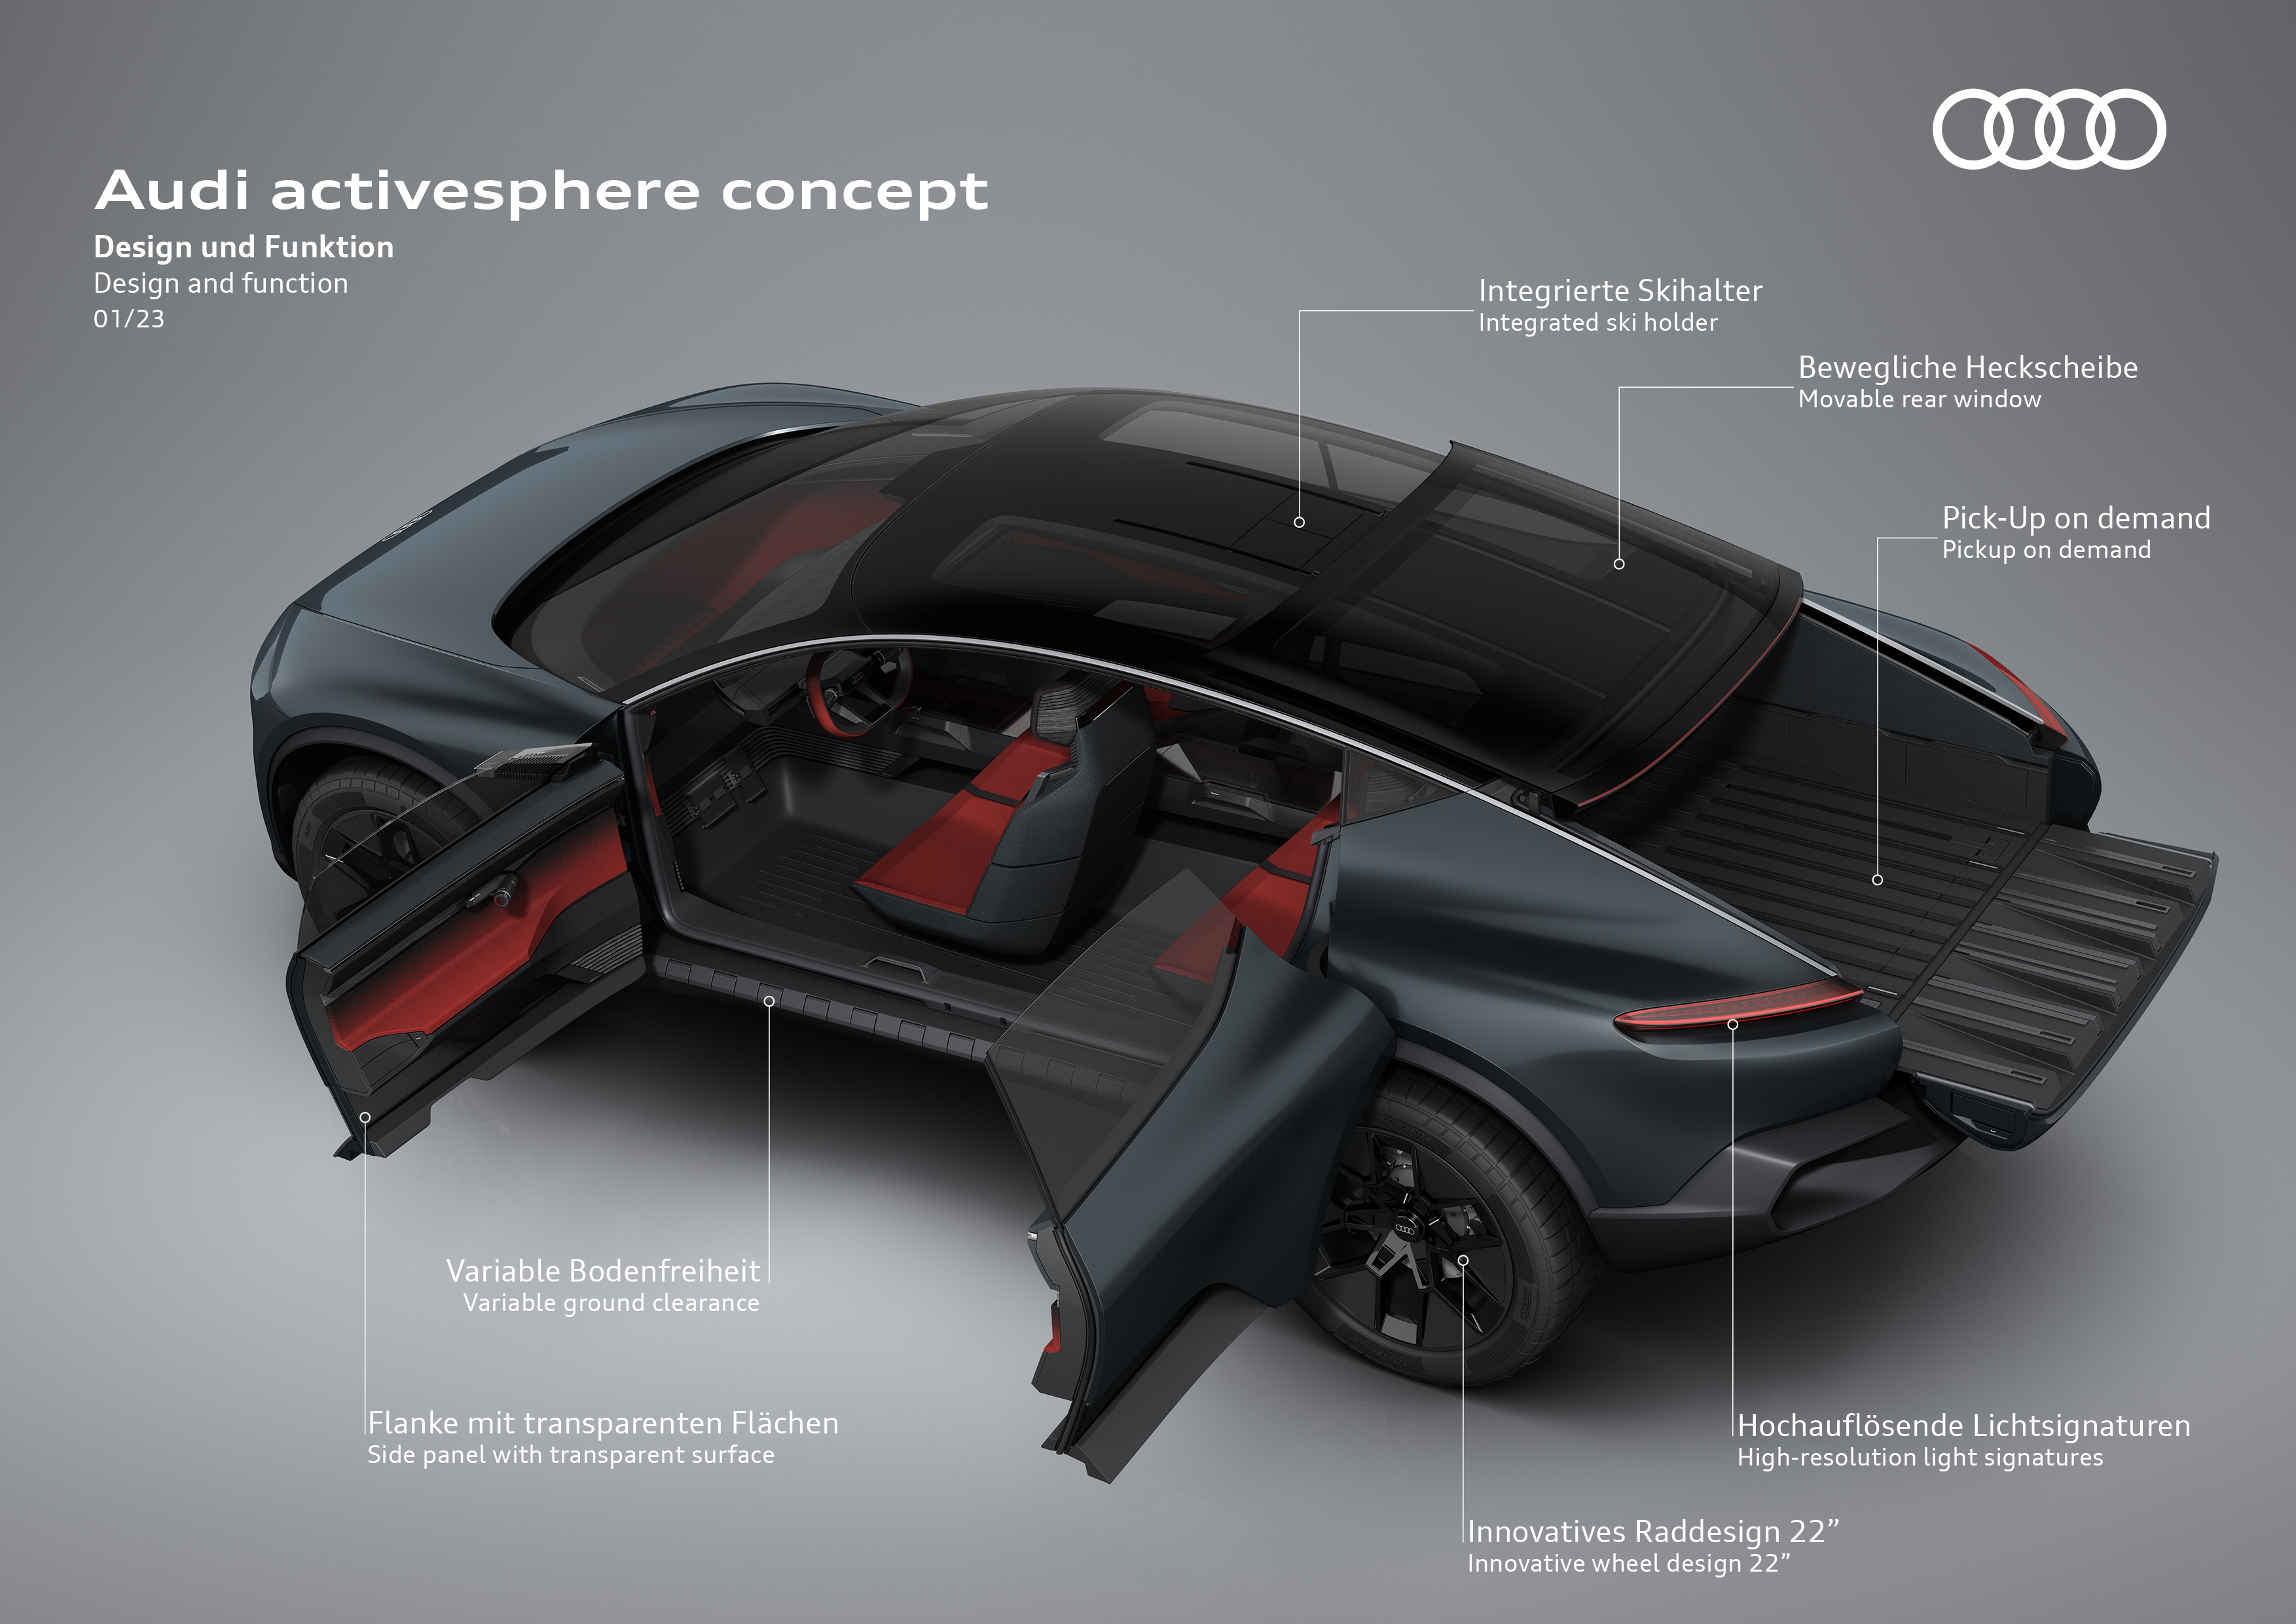 20230127 006 Audi activesphere concept s11